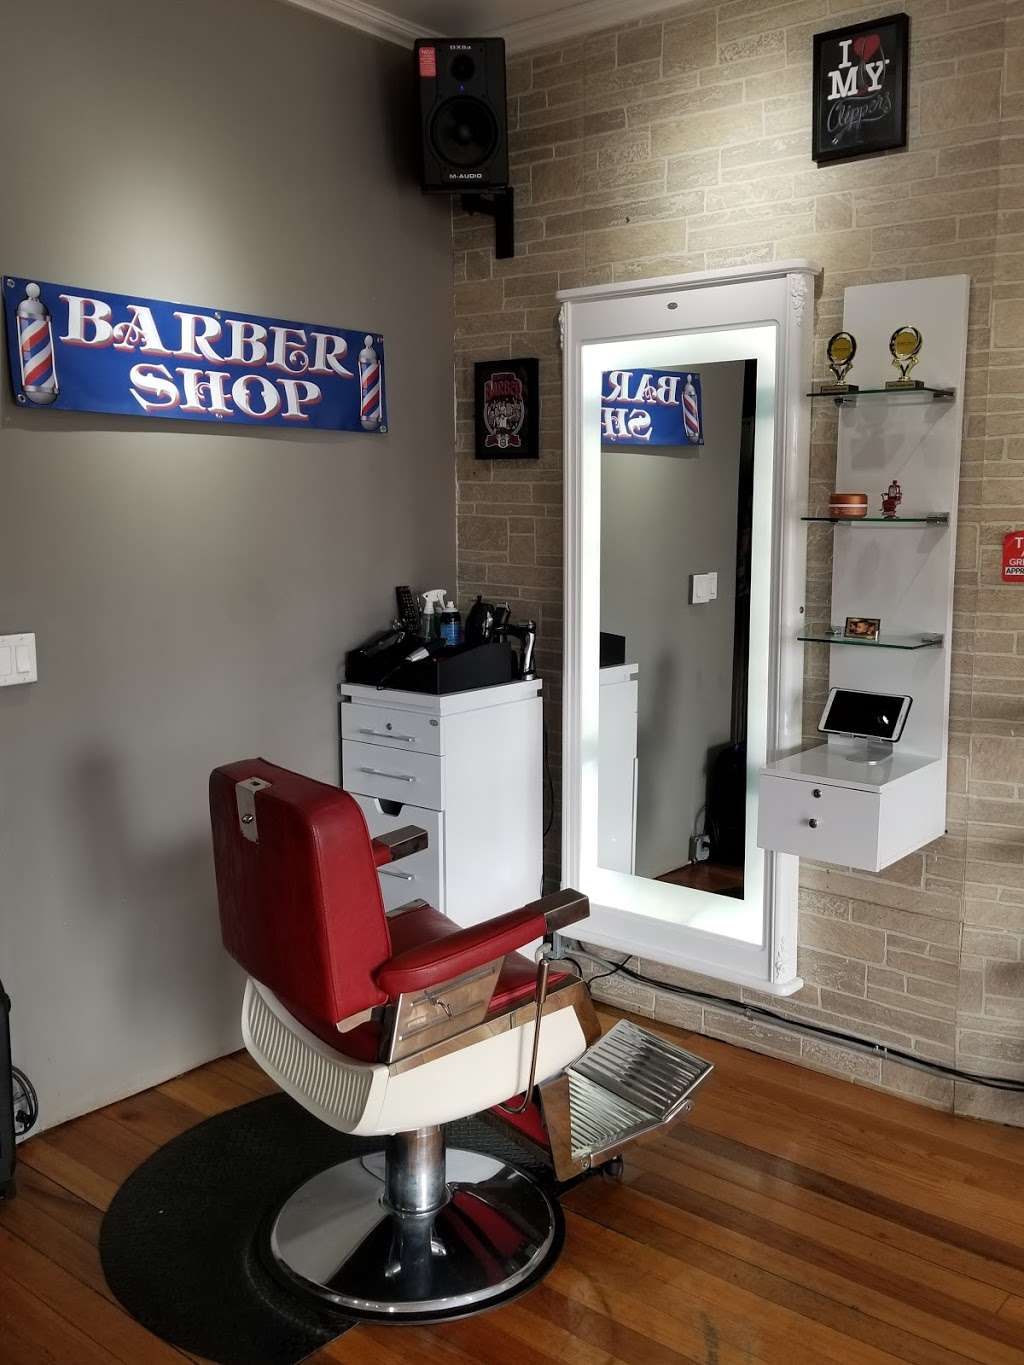 Camilos barber shop | 274 Centre Ave, Secaucus, NJ 07094, USA | Phone: (201) 888-8504